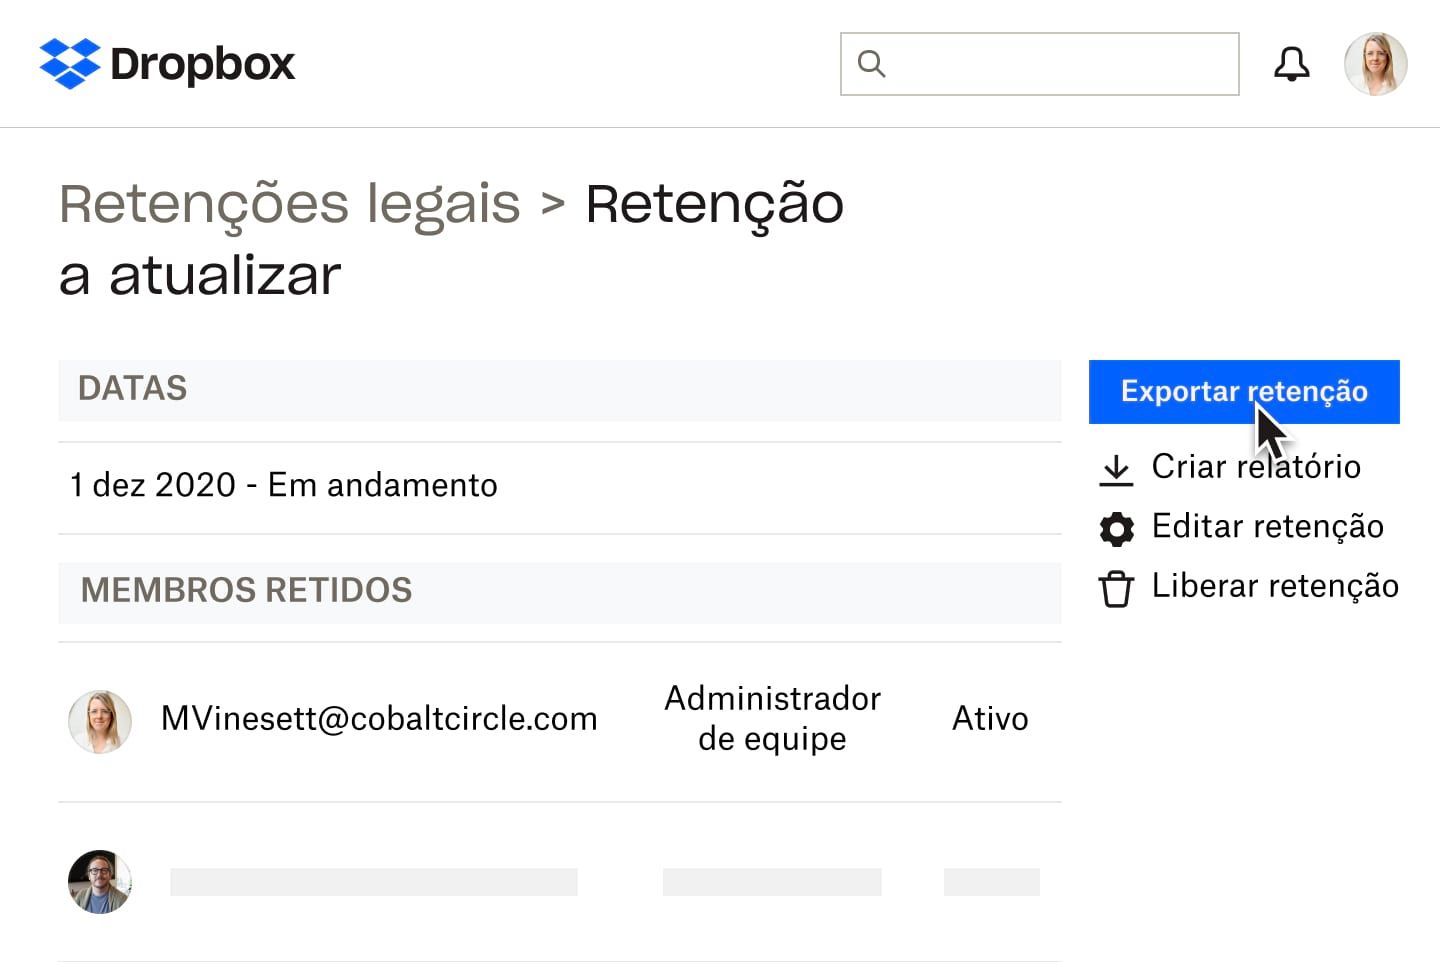 Documento de retenção legal no Dropbox com configurações de compartilhamento e edição